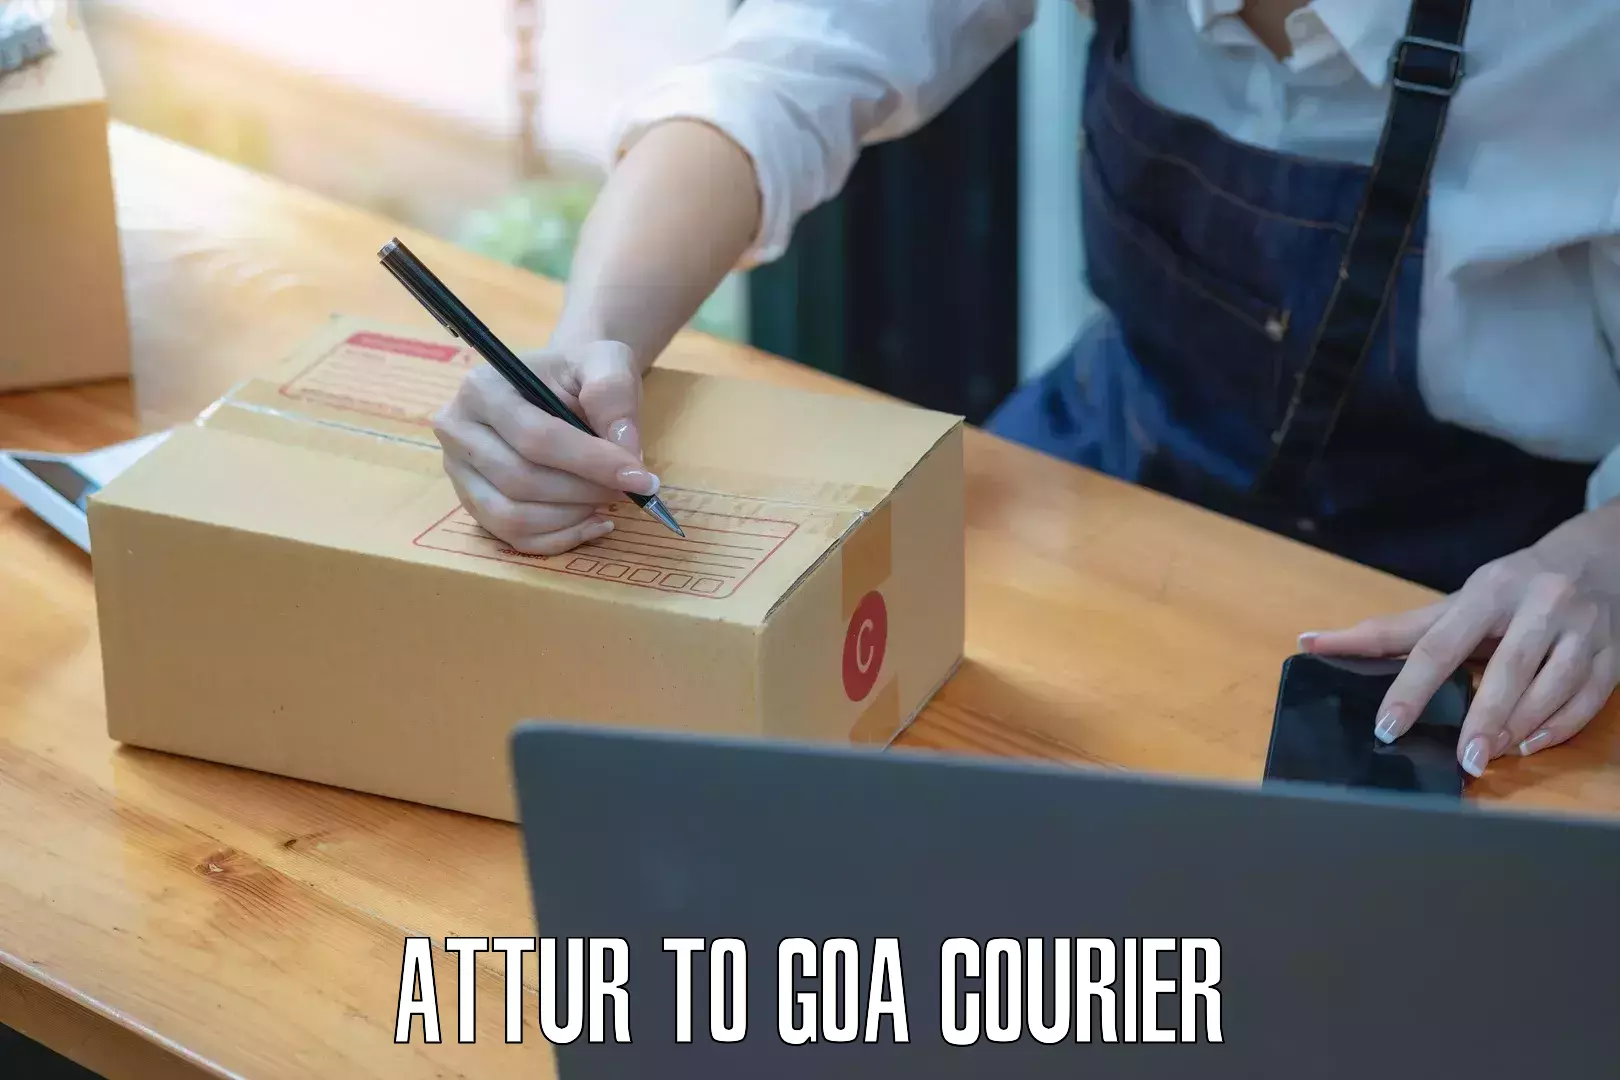 Courier service comparison Attur to Goa